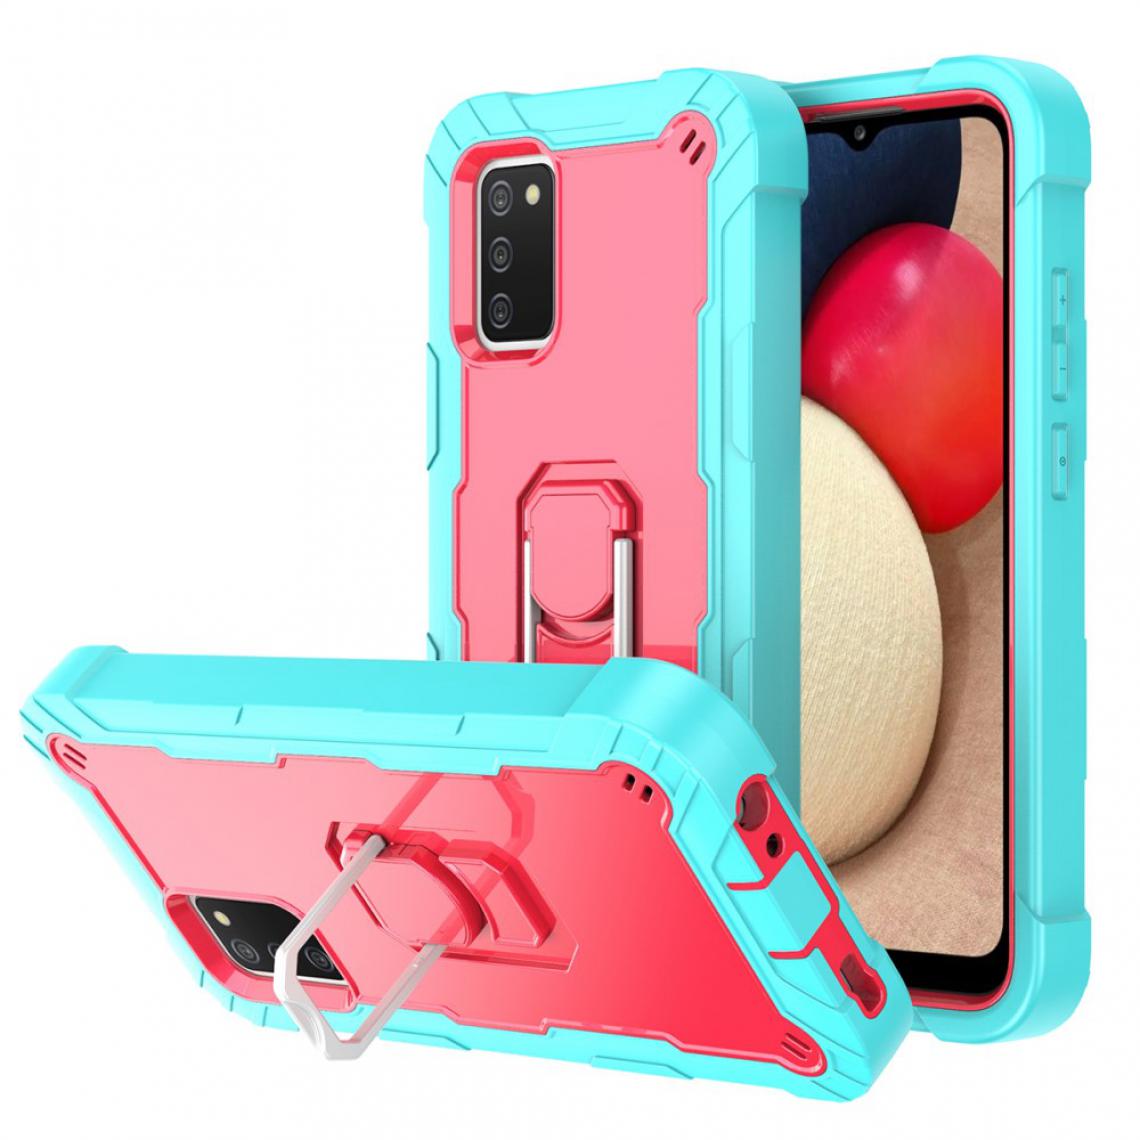 Other - Coque en TPU + Silicone Antichoc (164,2x75,9x9,1mm) avec béquille intégrée Aqua/Rose rouge pour votre Samsung Galaxy A02s - Coque, étui smartphone